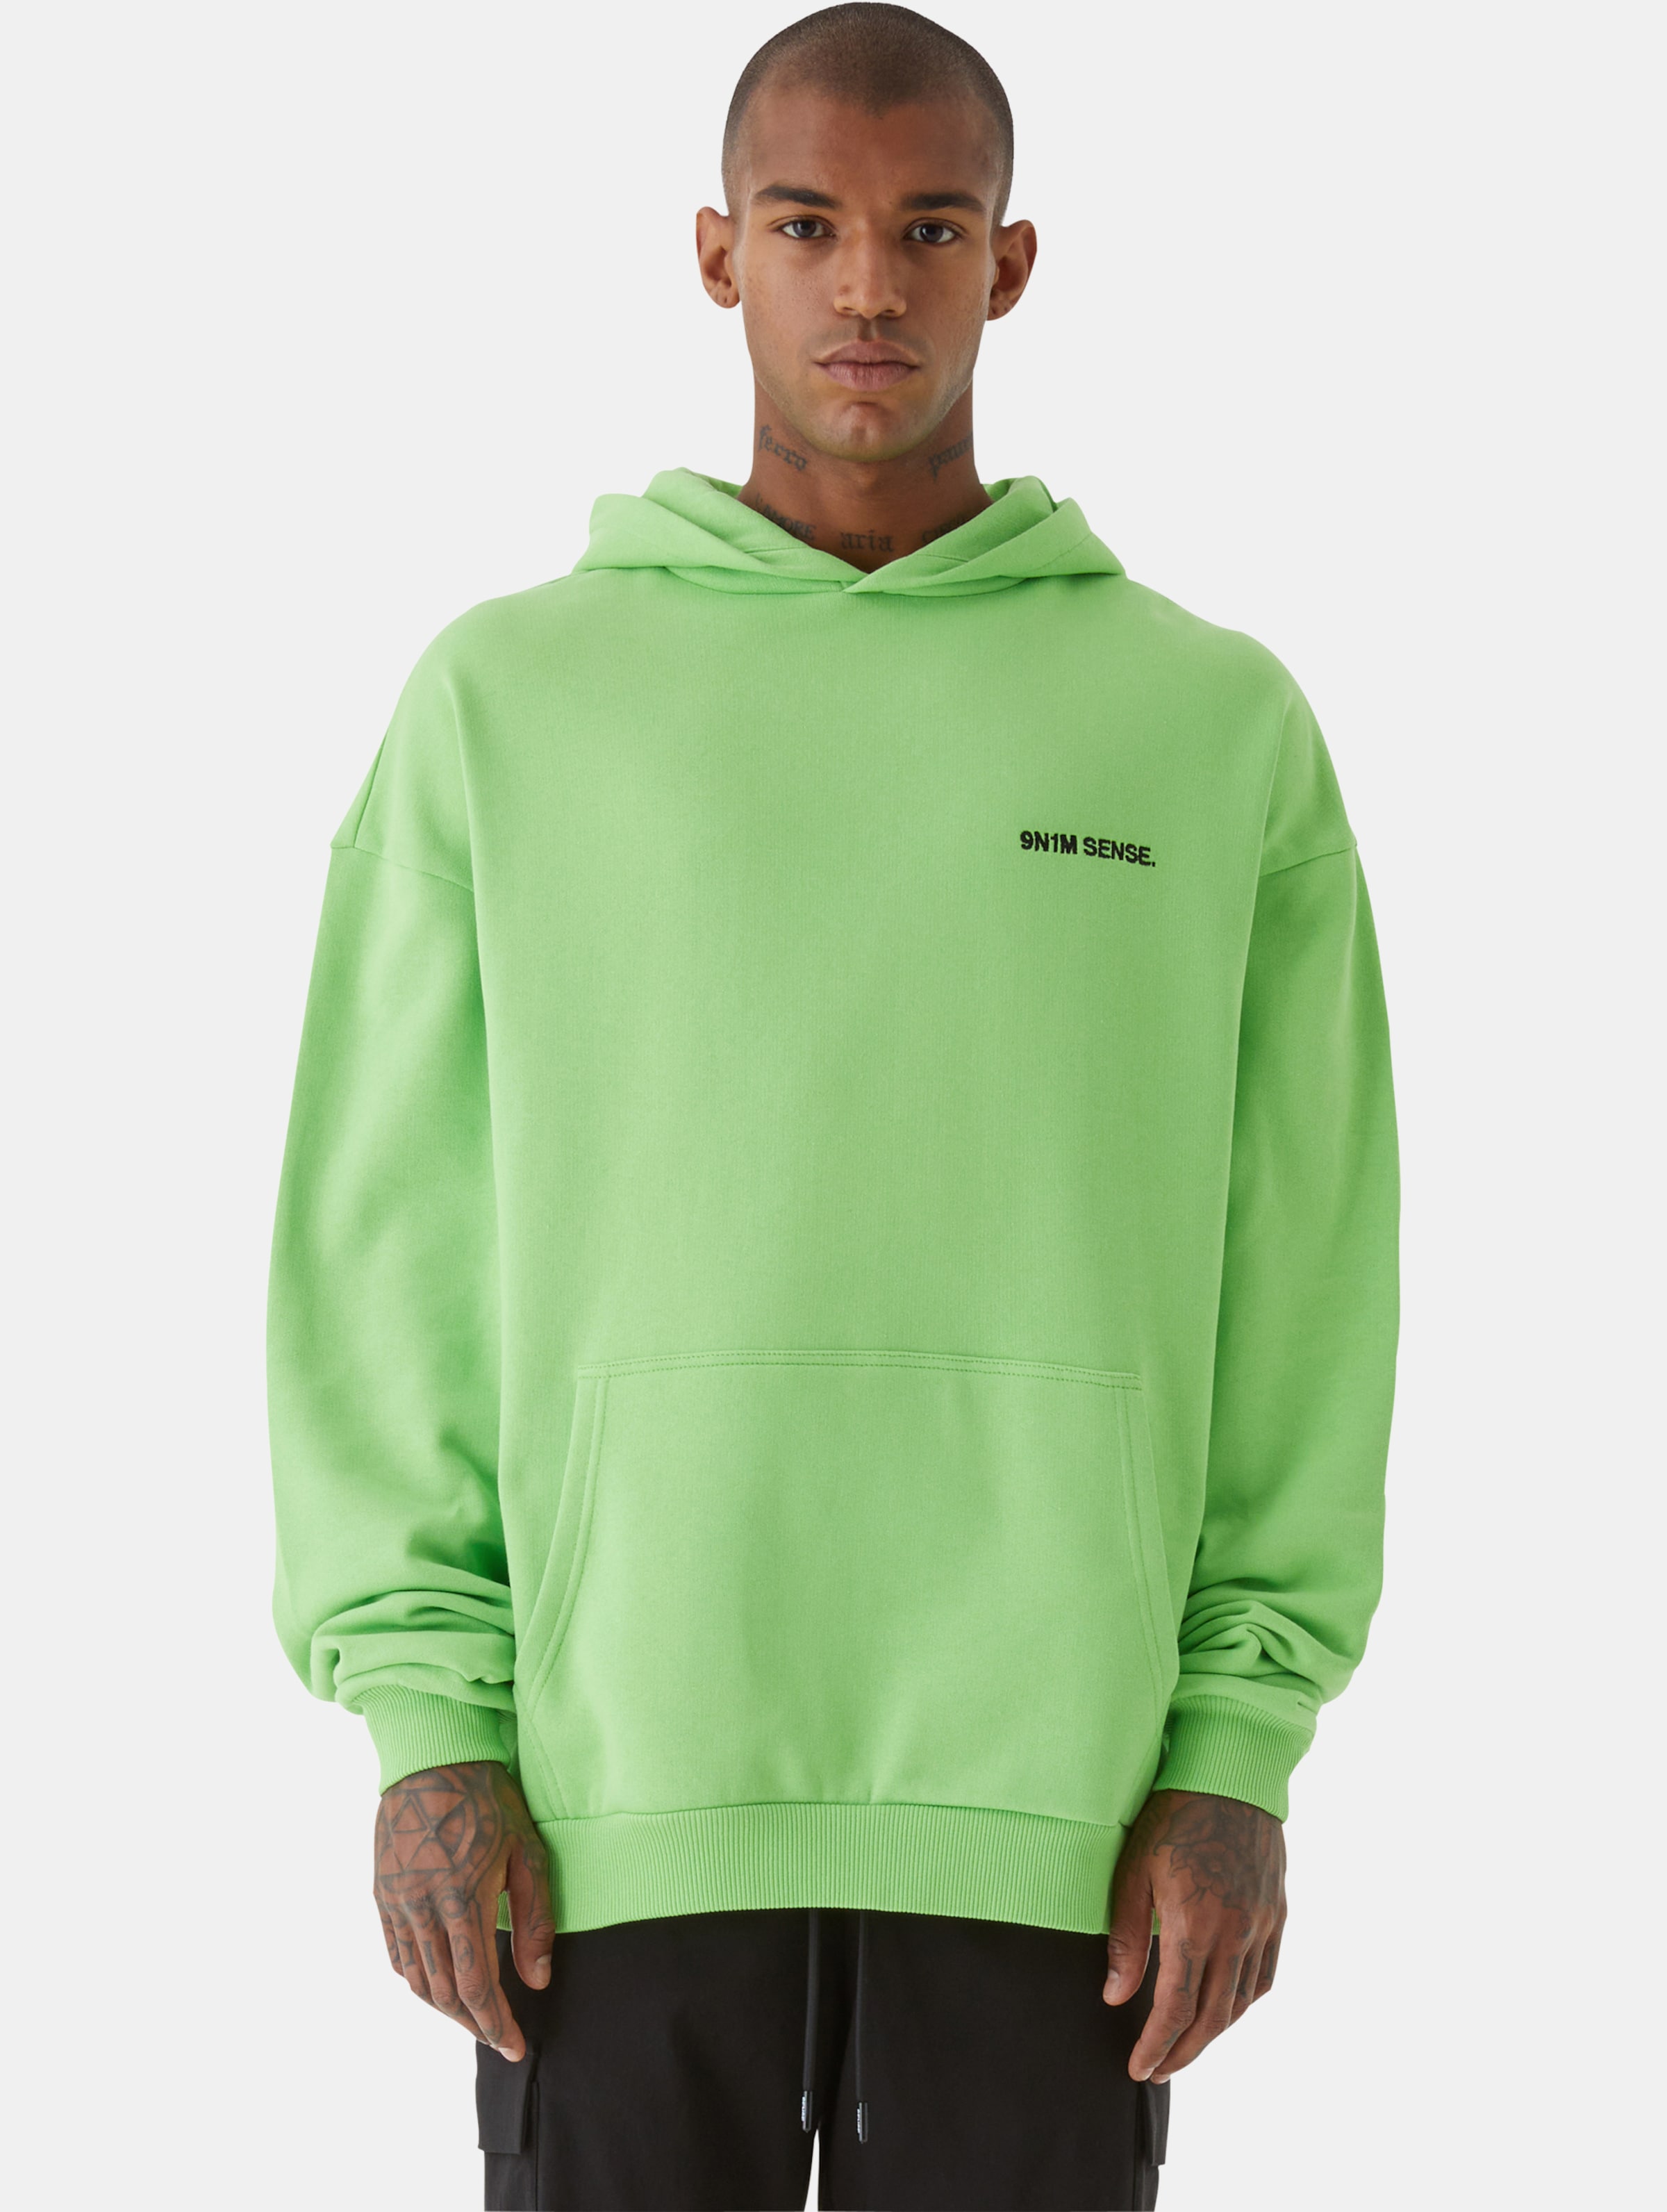 9N1M SENSE Essential Hoodie Männer,Unisex op kleur groen, Maat XL